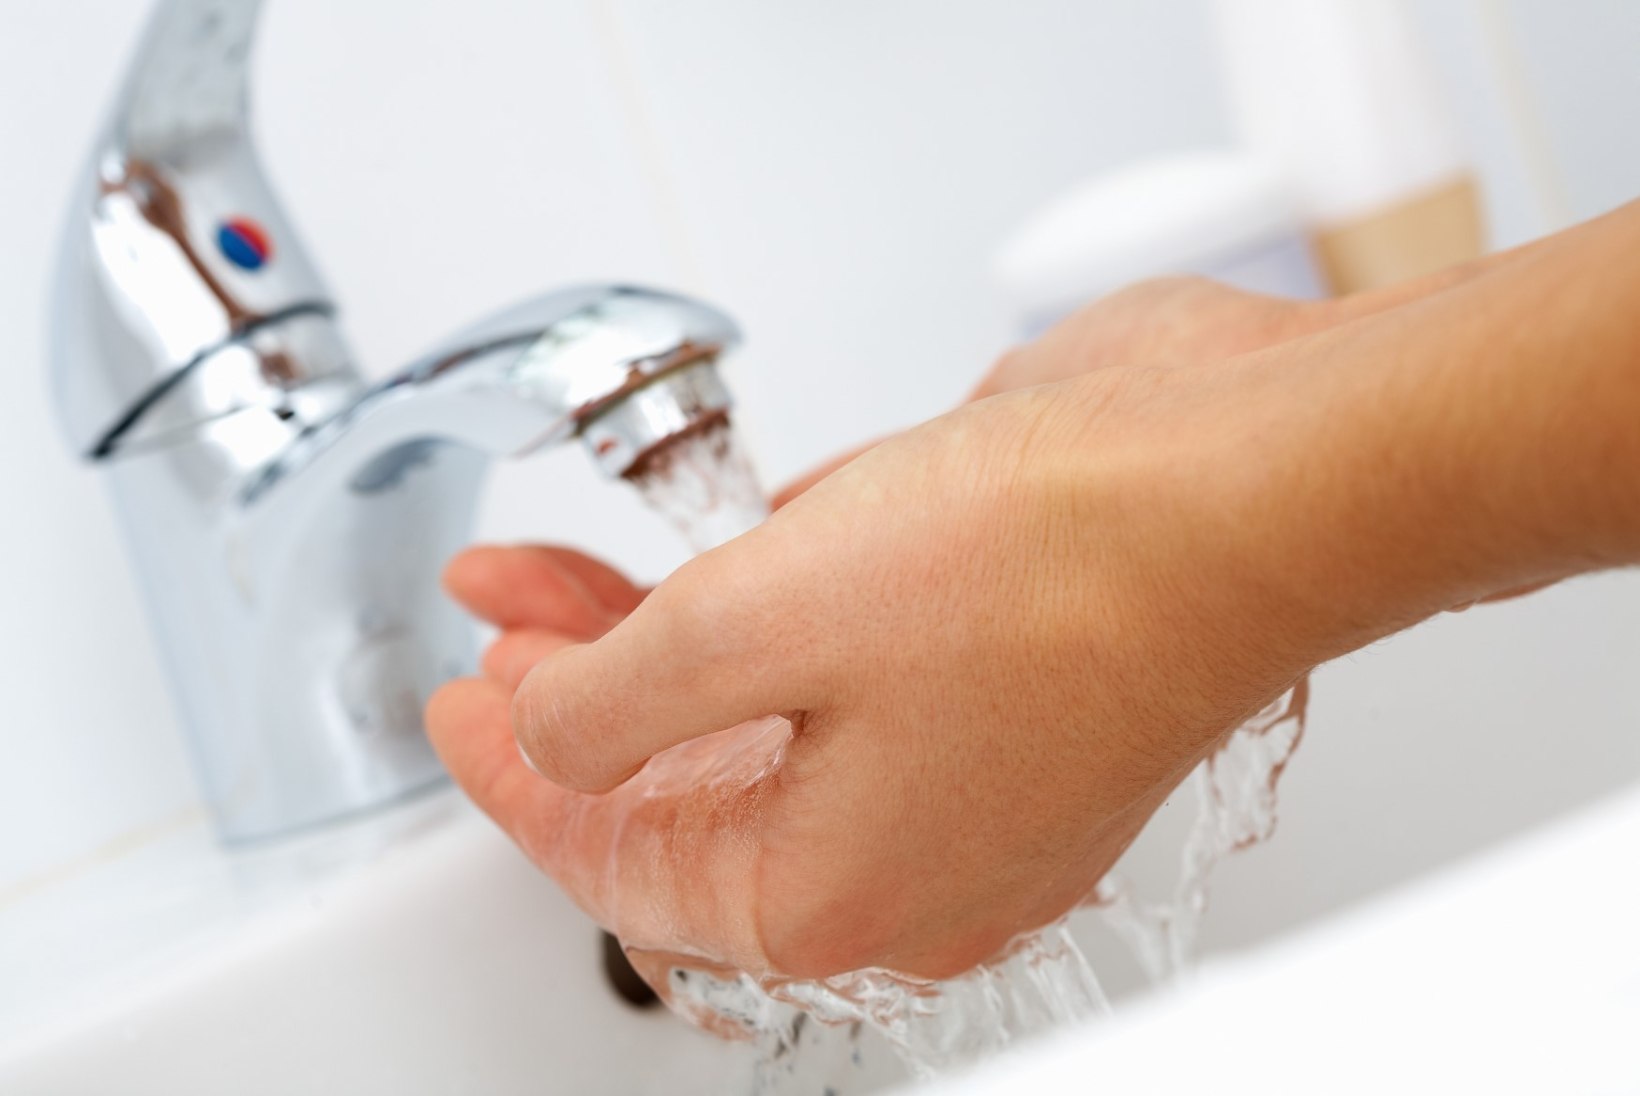 Viis asja, mida sa peaksid käte pesemisega seoses alati meeles pidama